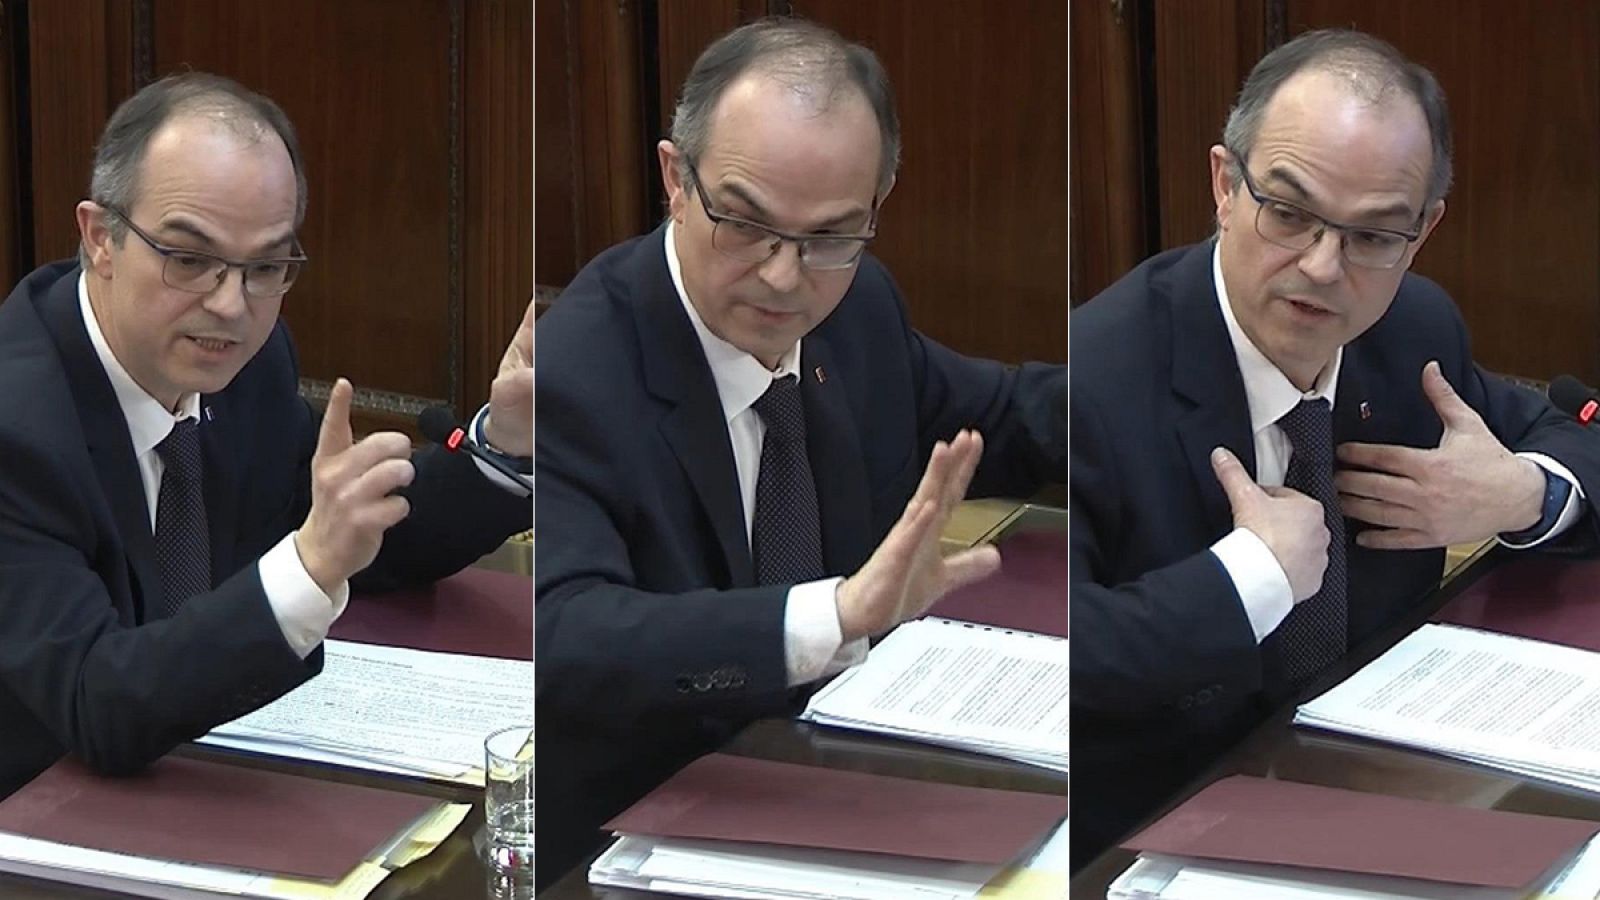 Vídeo: Turull, en el juicio del 'procés': "La DUI fue una expresión de una voluntad política" - RTVE.es